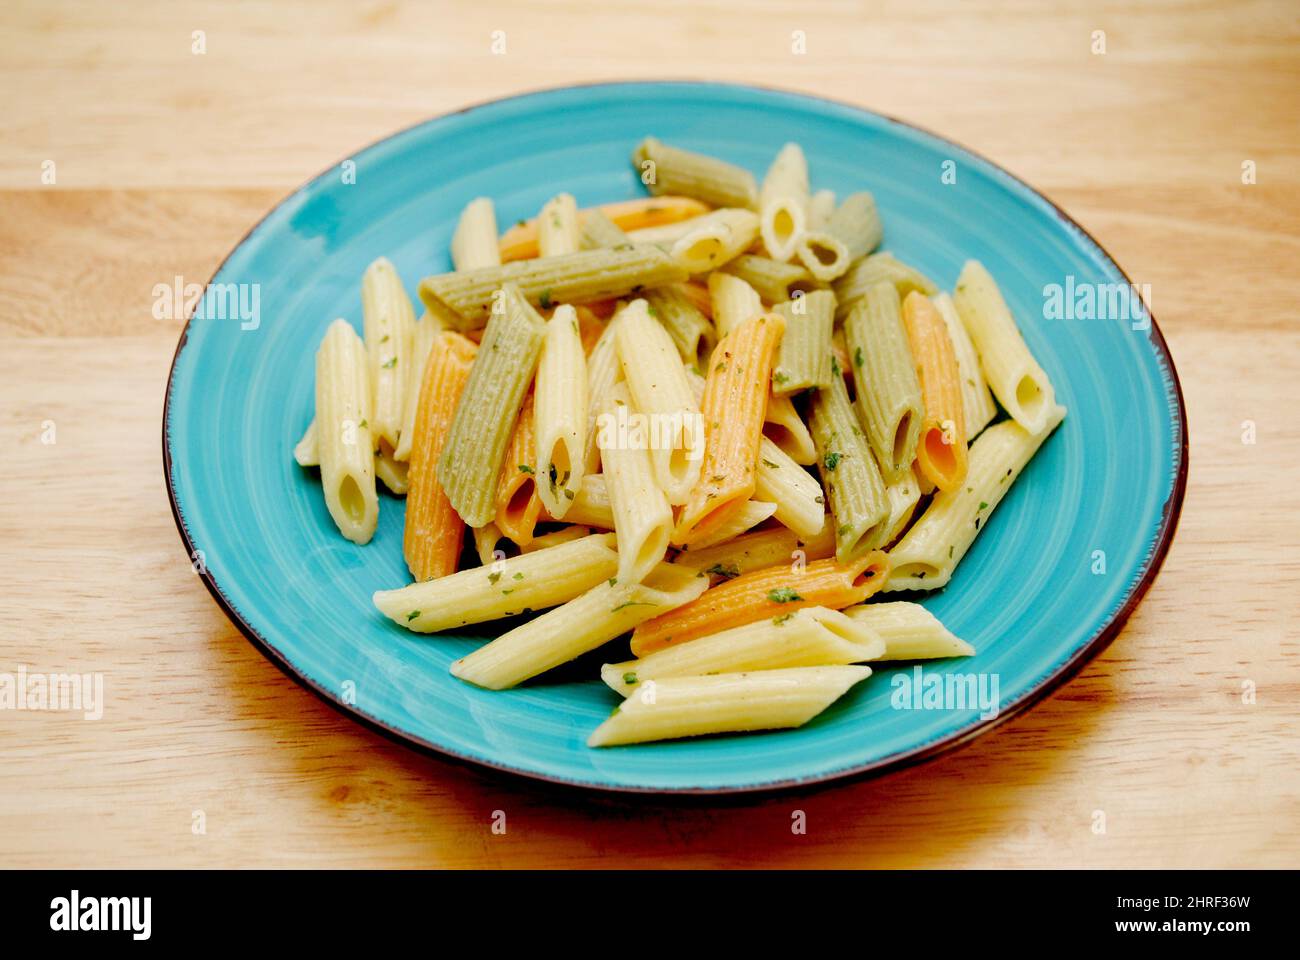 Assiette de pâtes Penne cuites en forme de cylindre de trois couleurs jaune, vert et rouge Banque D'Images